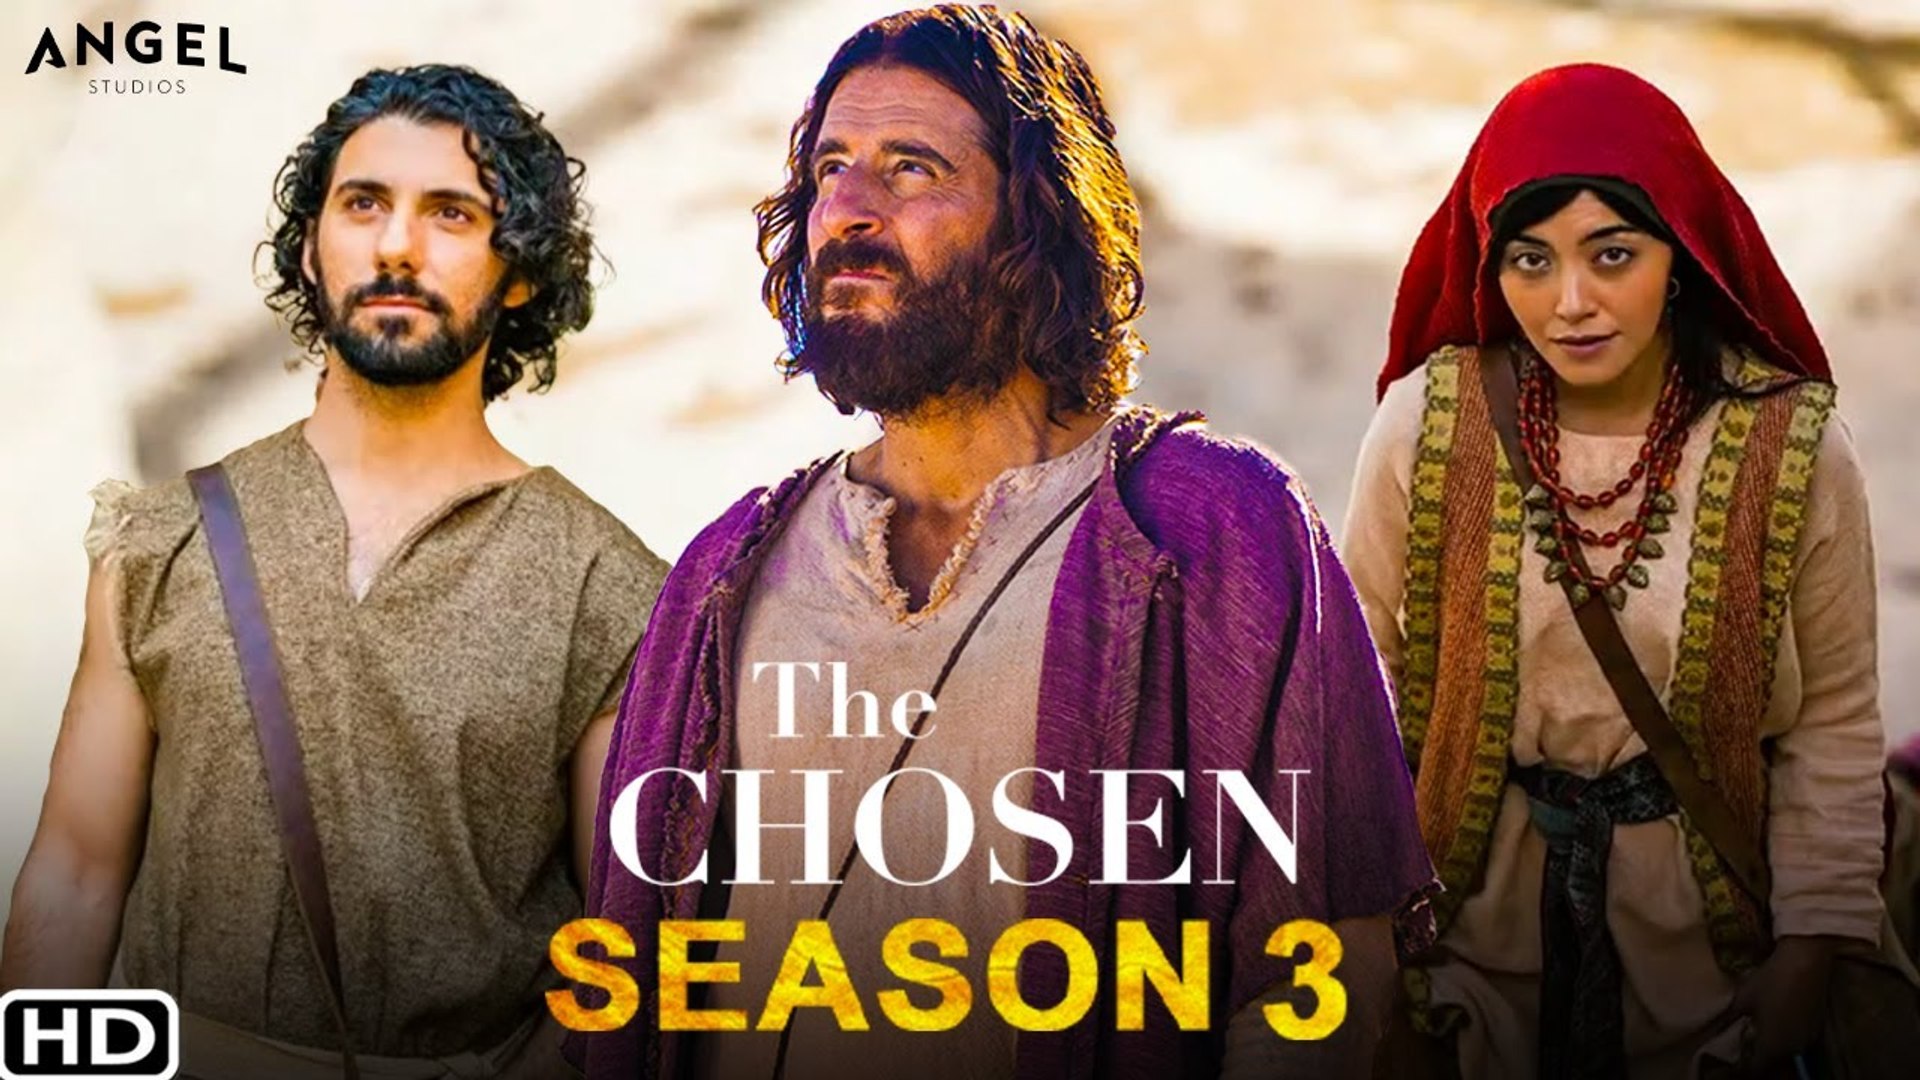 The Chosen, Official Season 3 Trailer